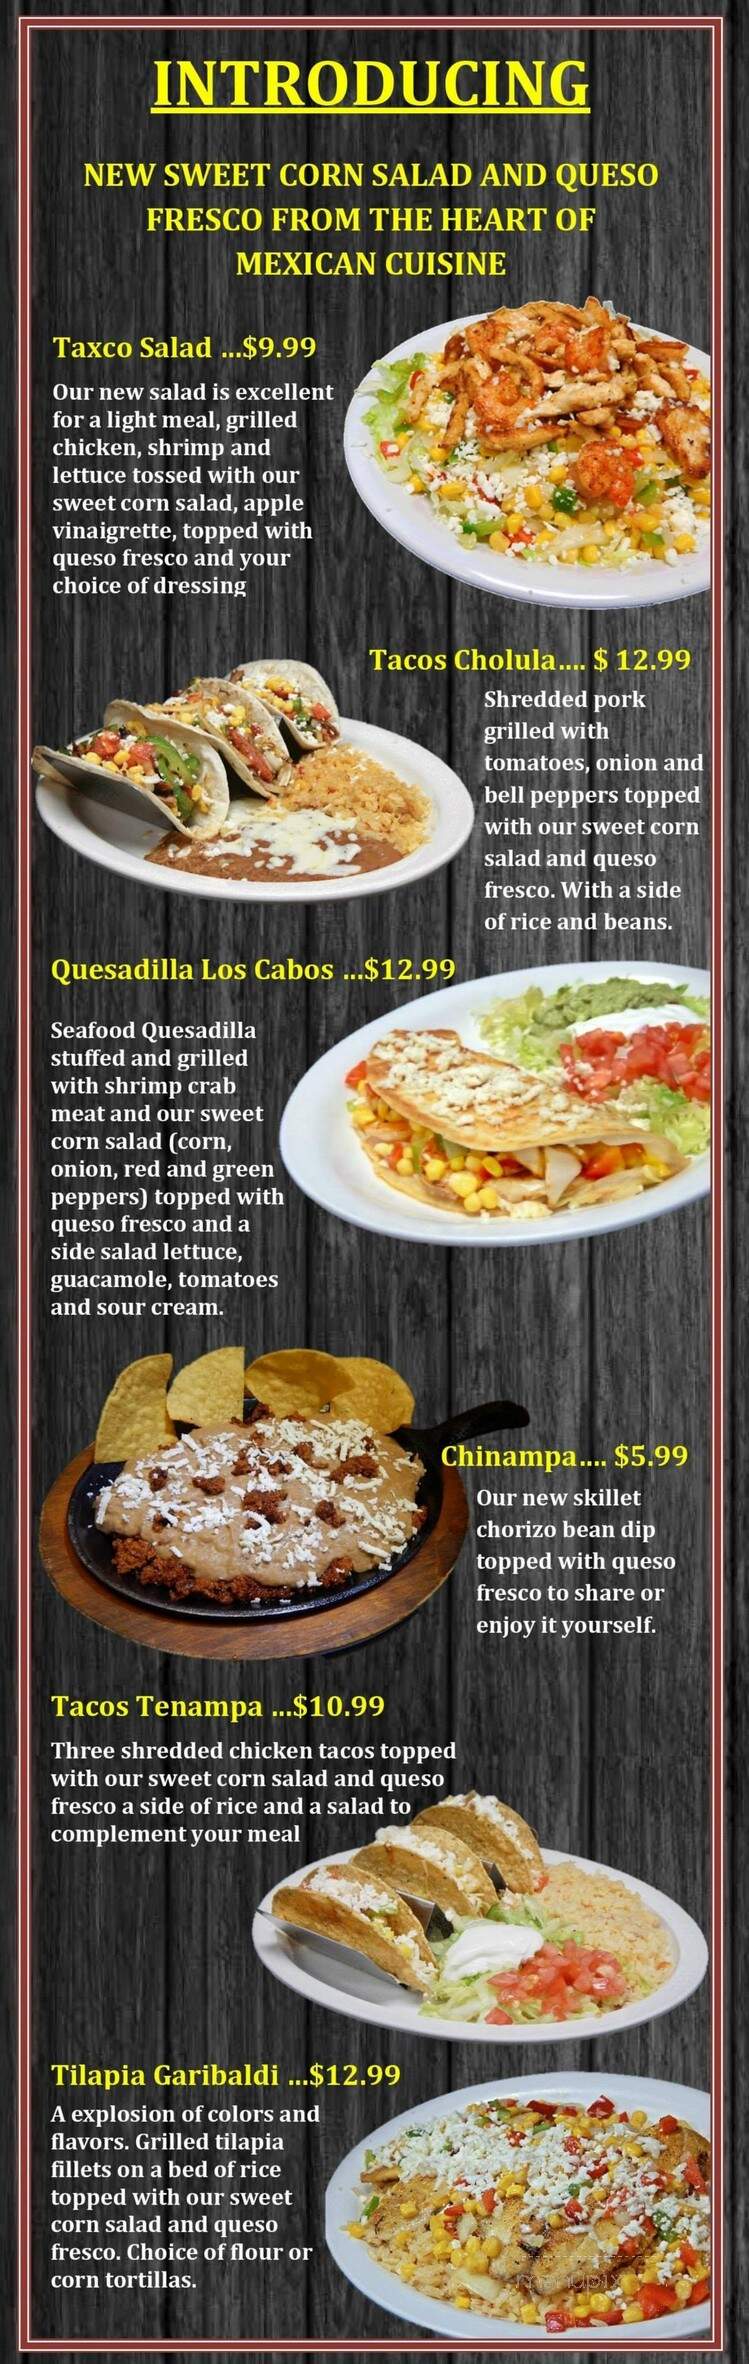 Los Amigos Mexican Restaurant - Muskegon, MI